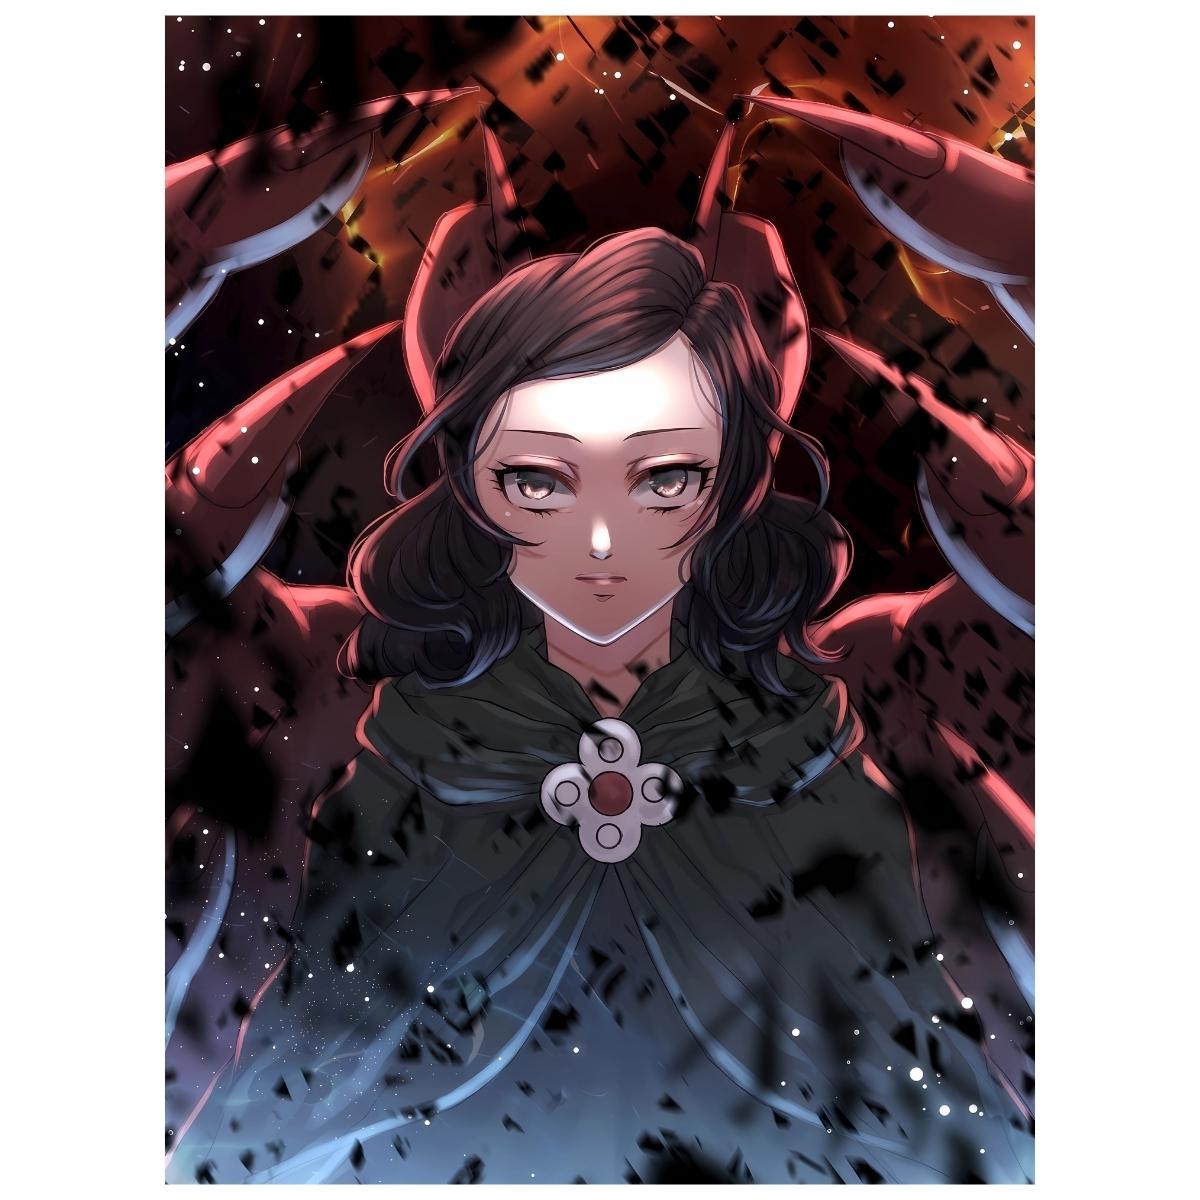 Ranking of Kings: Miranjo - Anime Painting Set